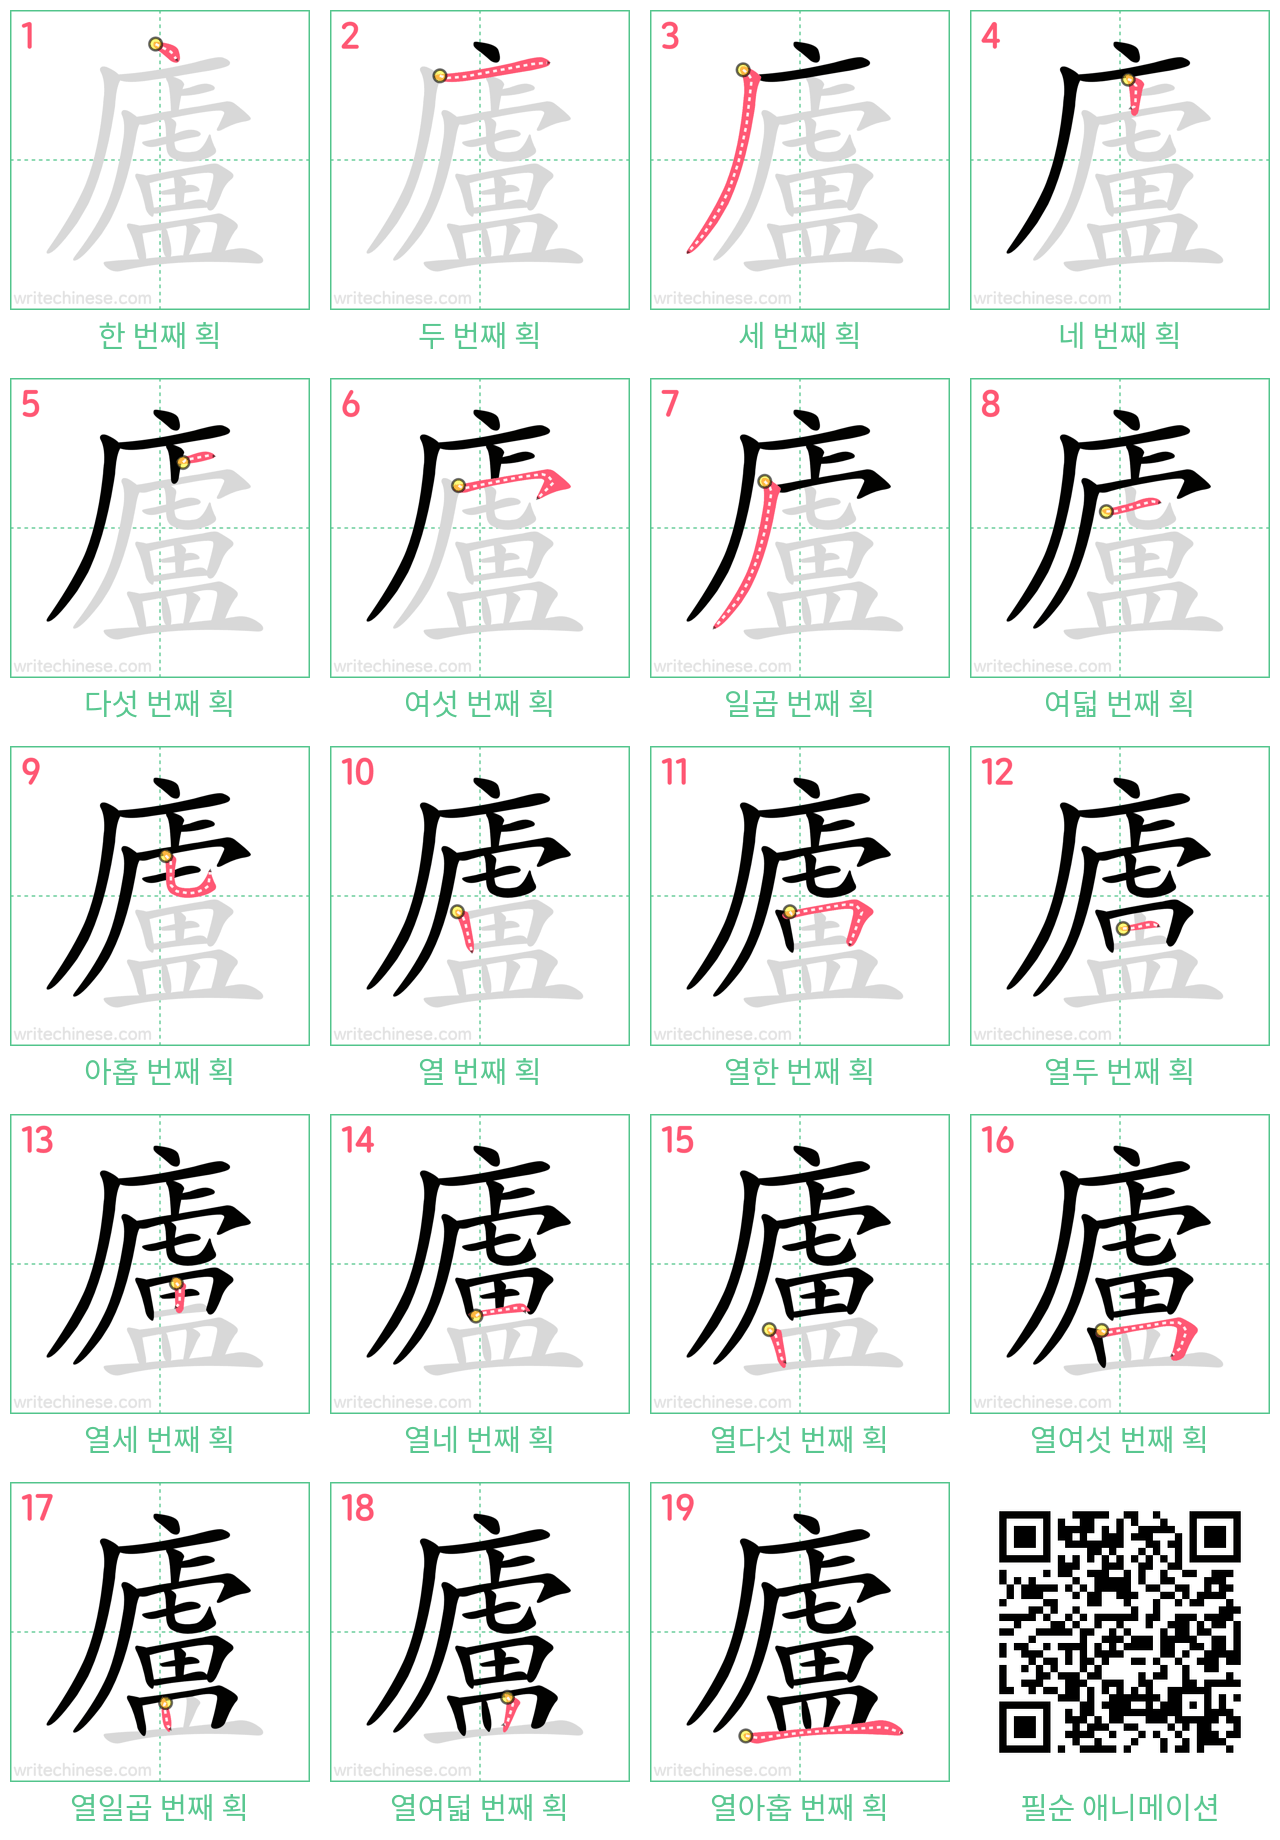 廬 step-by-step stroke order diagrams